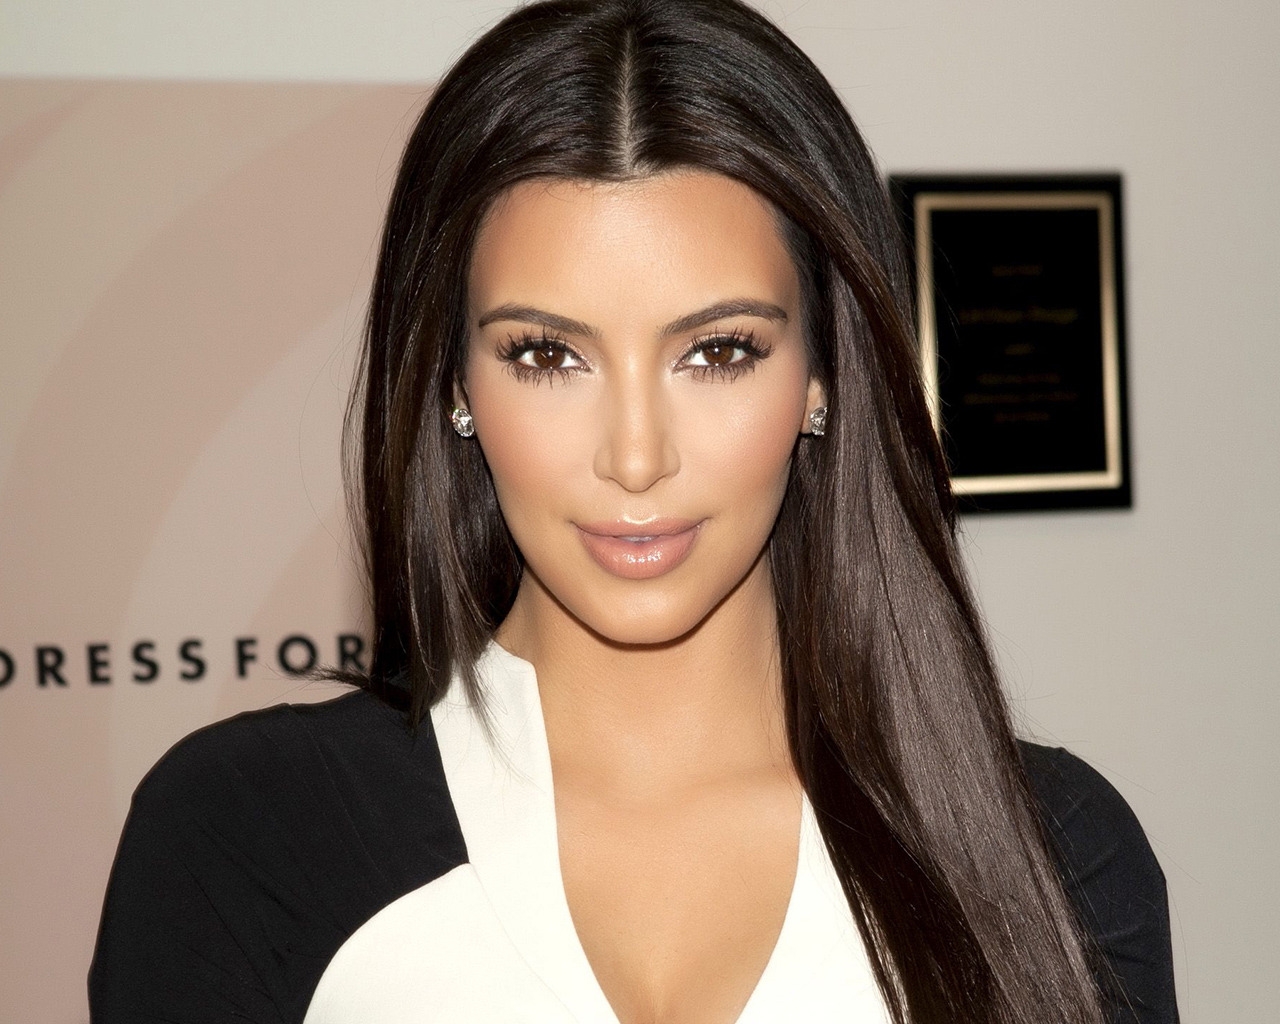 Gorgeous Kim Kardashian for 1280 x 1024 resolution